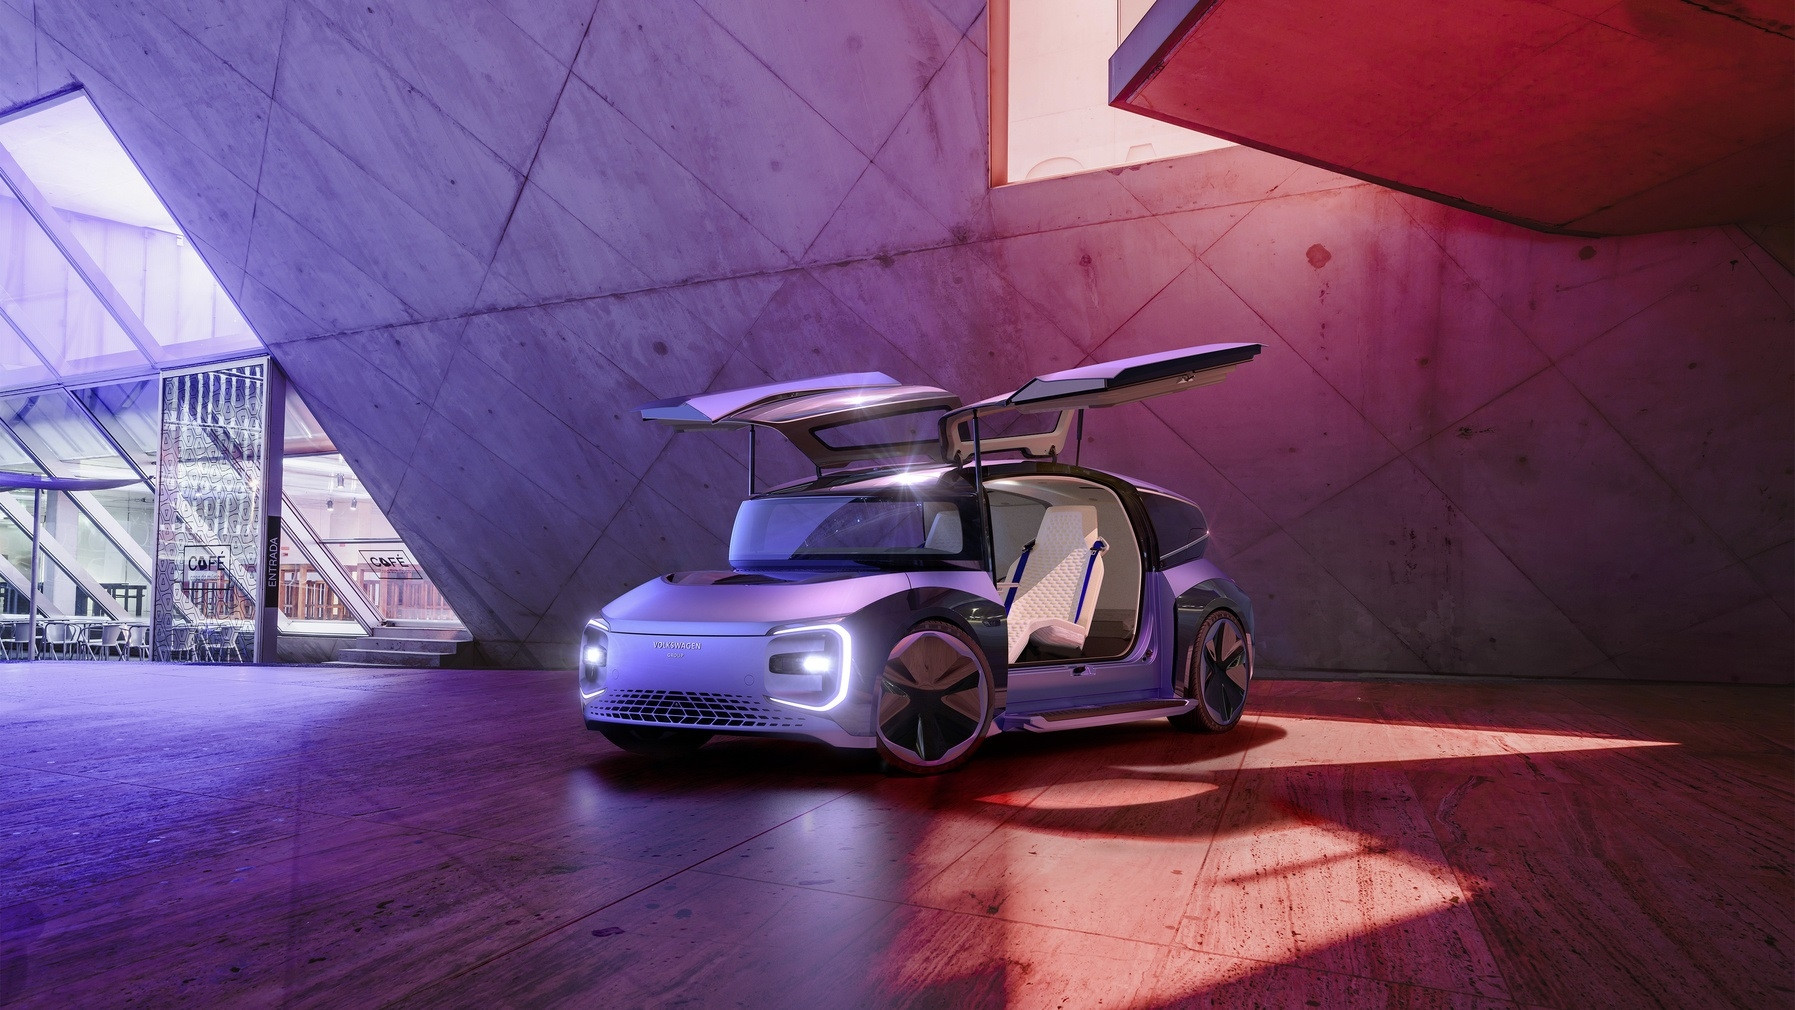 VW Gen Travel concept car level 5